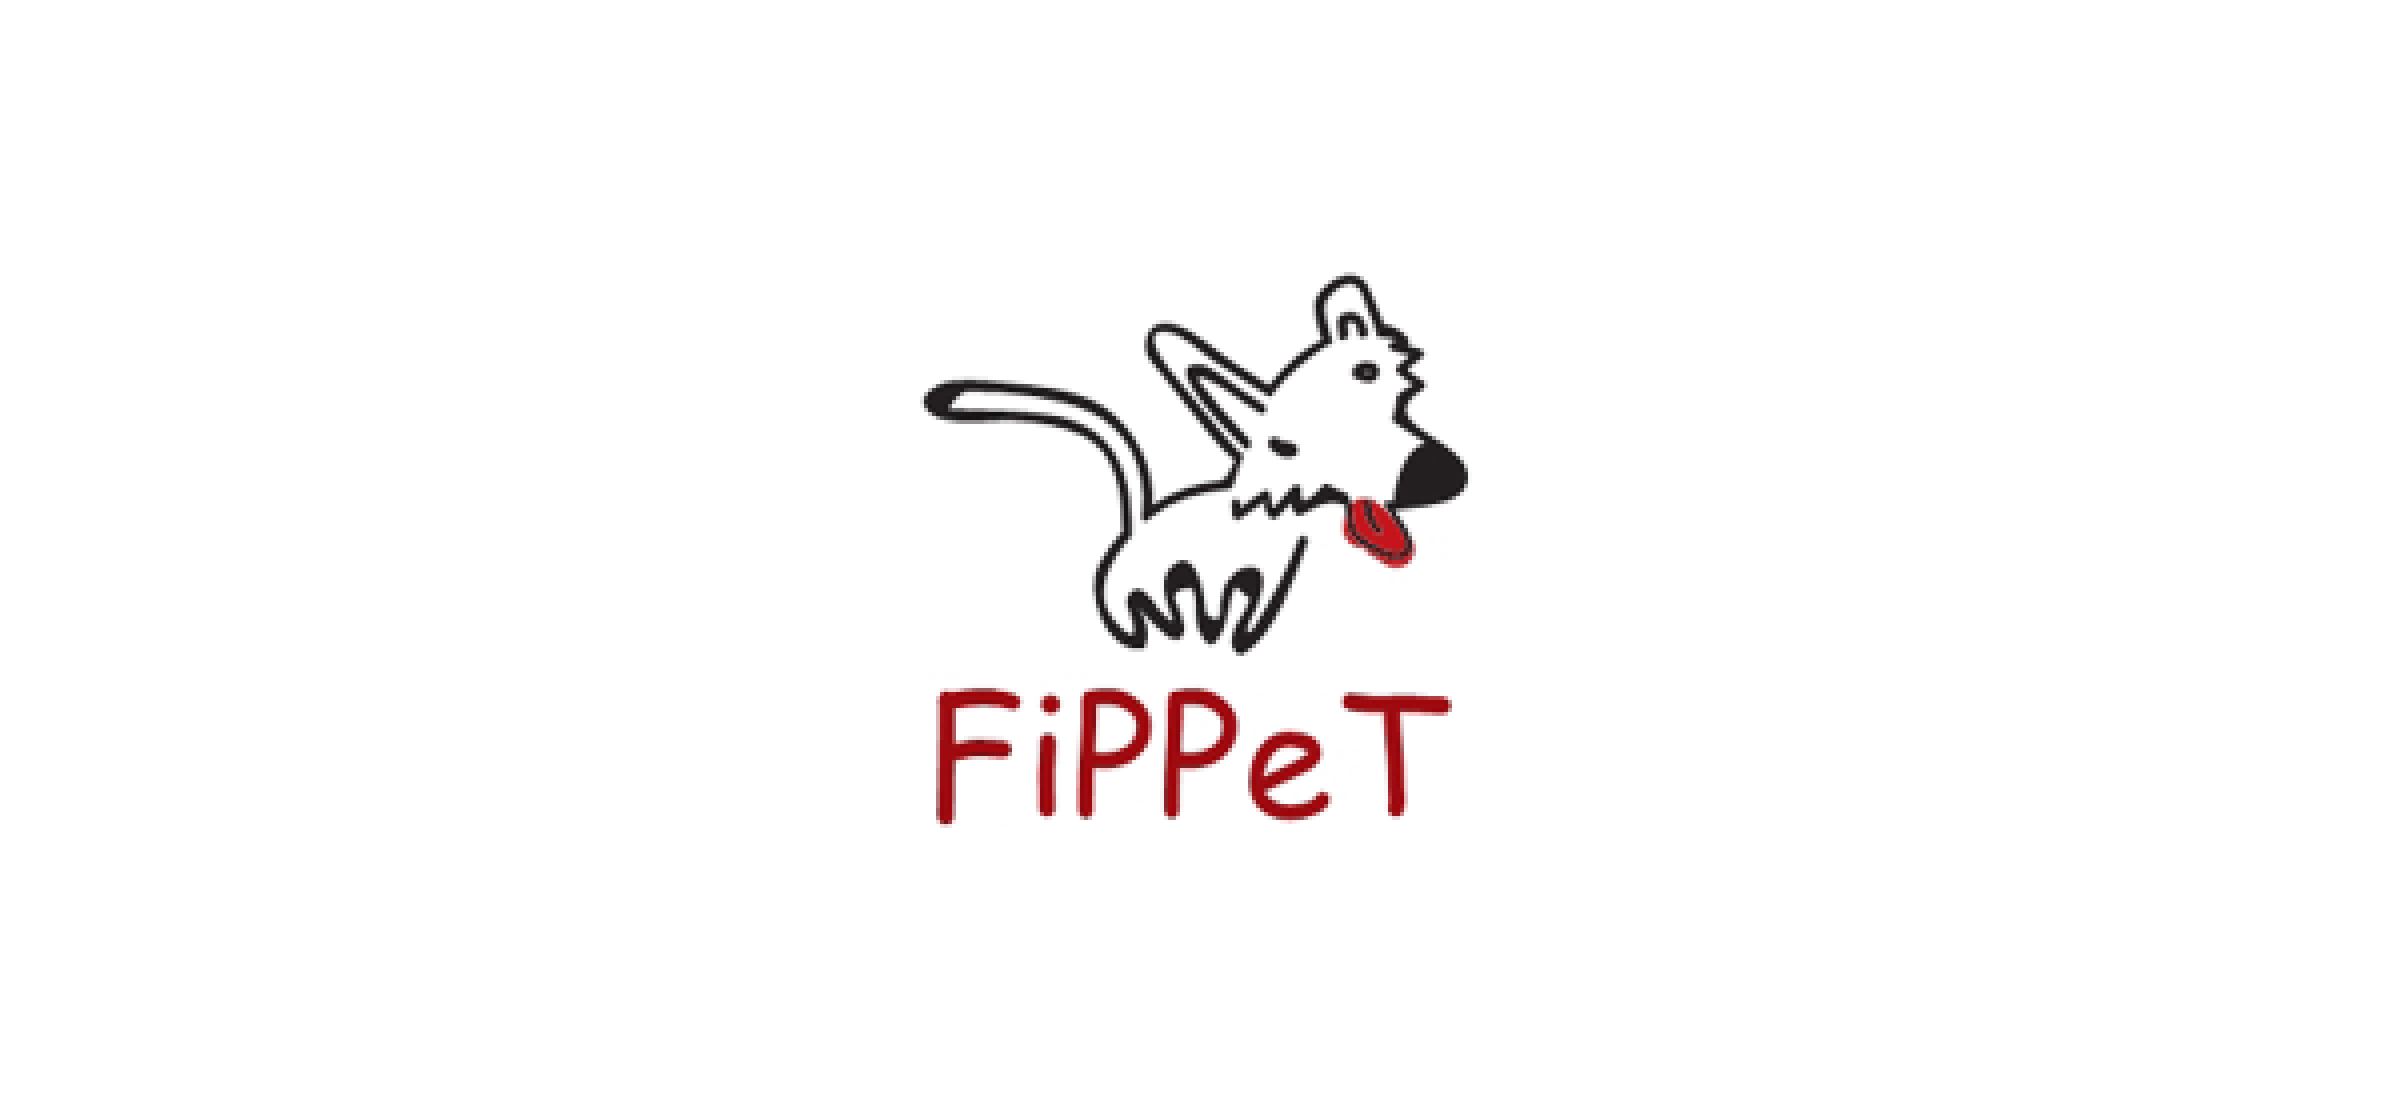 The Fippet logo